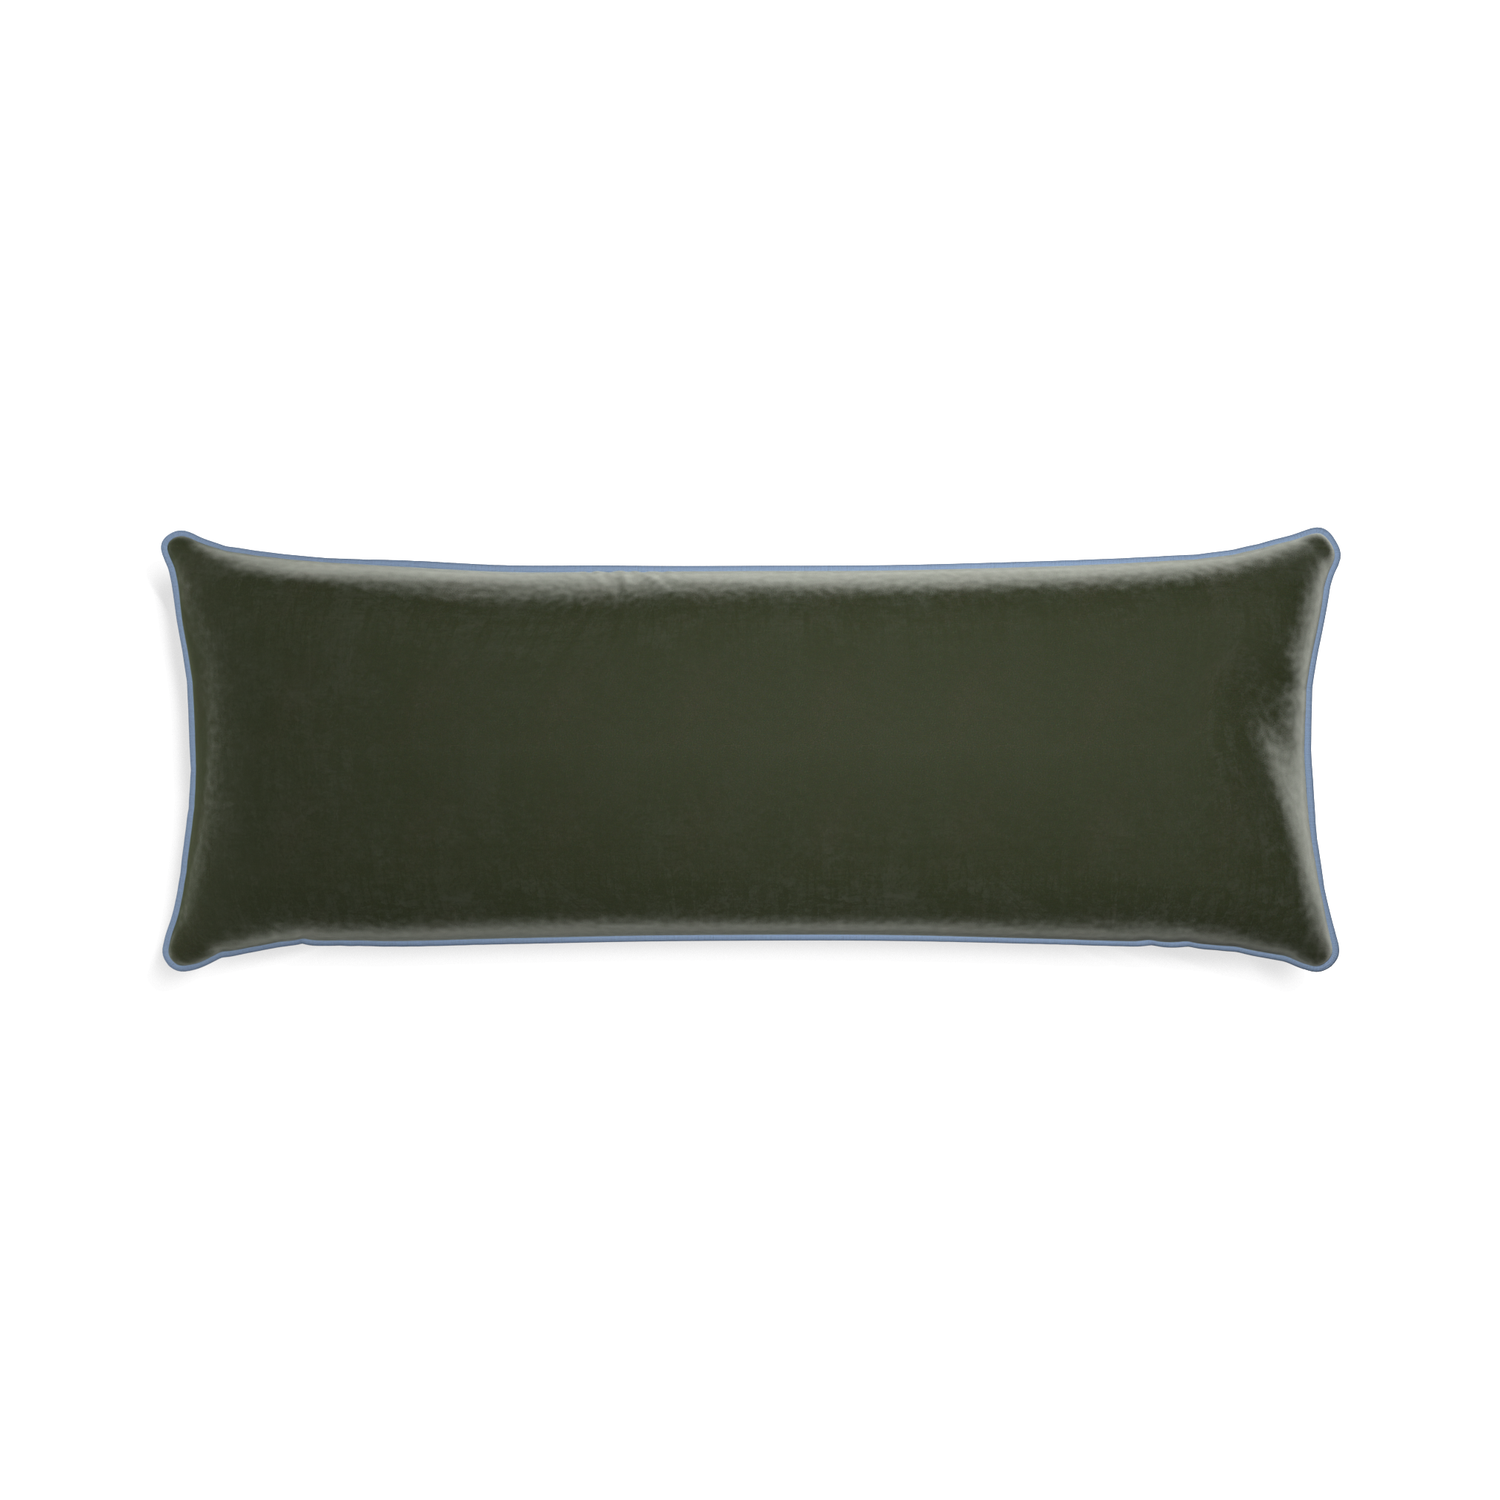 Xl-lumbar fern velvet custom pillow with sky piping on white background